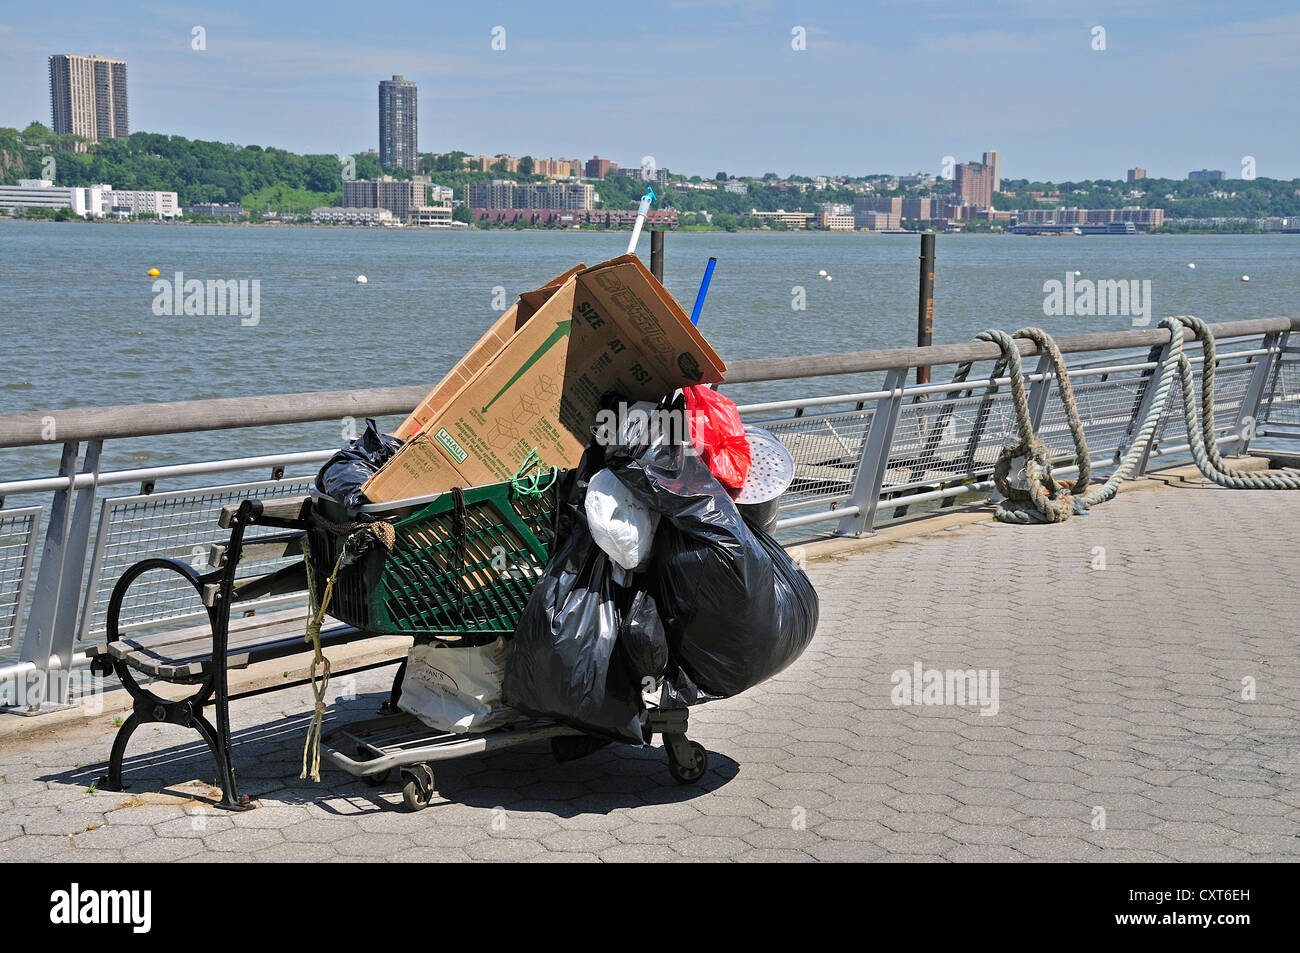 Effetti personali di una persona senza dimora, carrello di shopping presso il fiume Hudson, Manhattan, New York City, Stati Uniti d'America, America del Nord, America Foto Stock